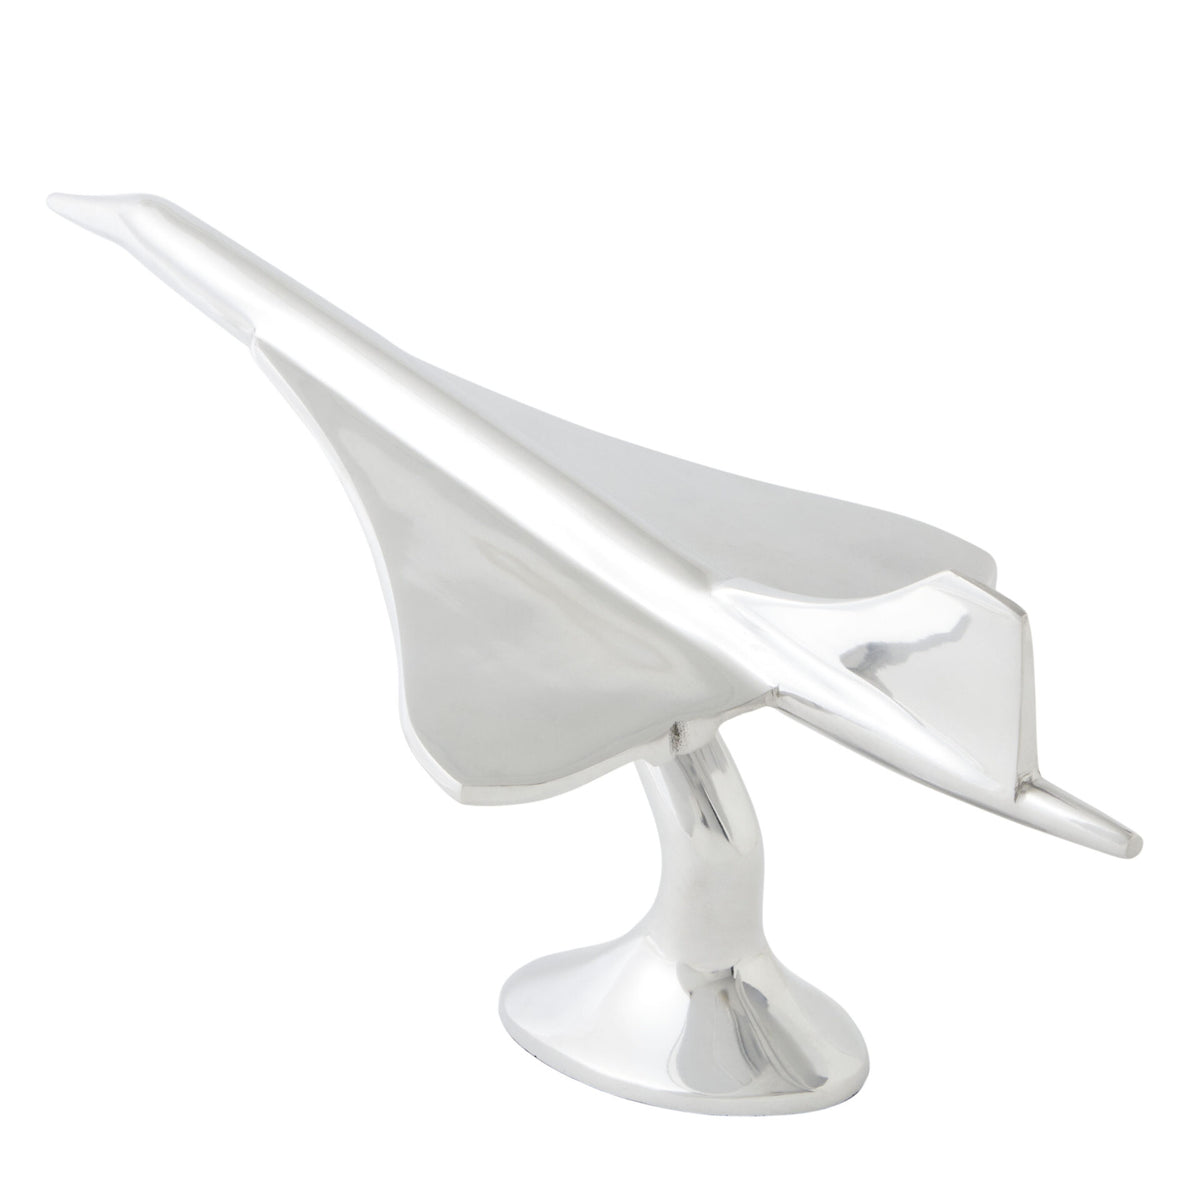 Concorde Plane Table Ornament in Aluminum - Silver